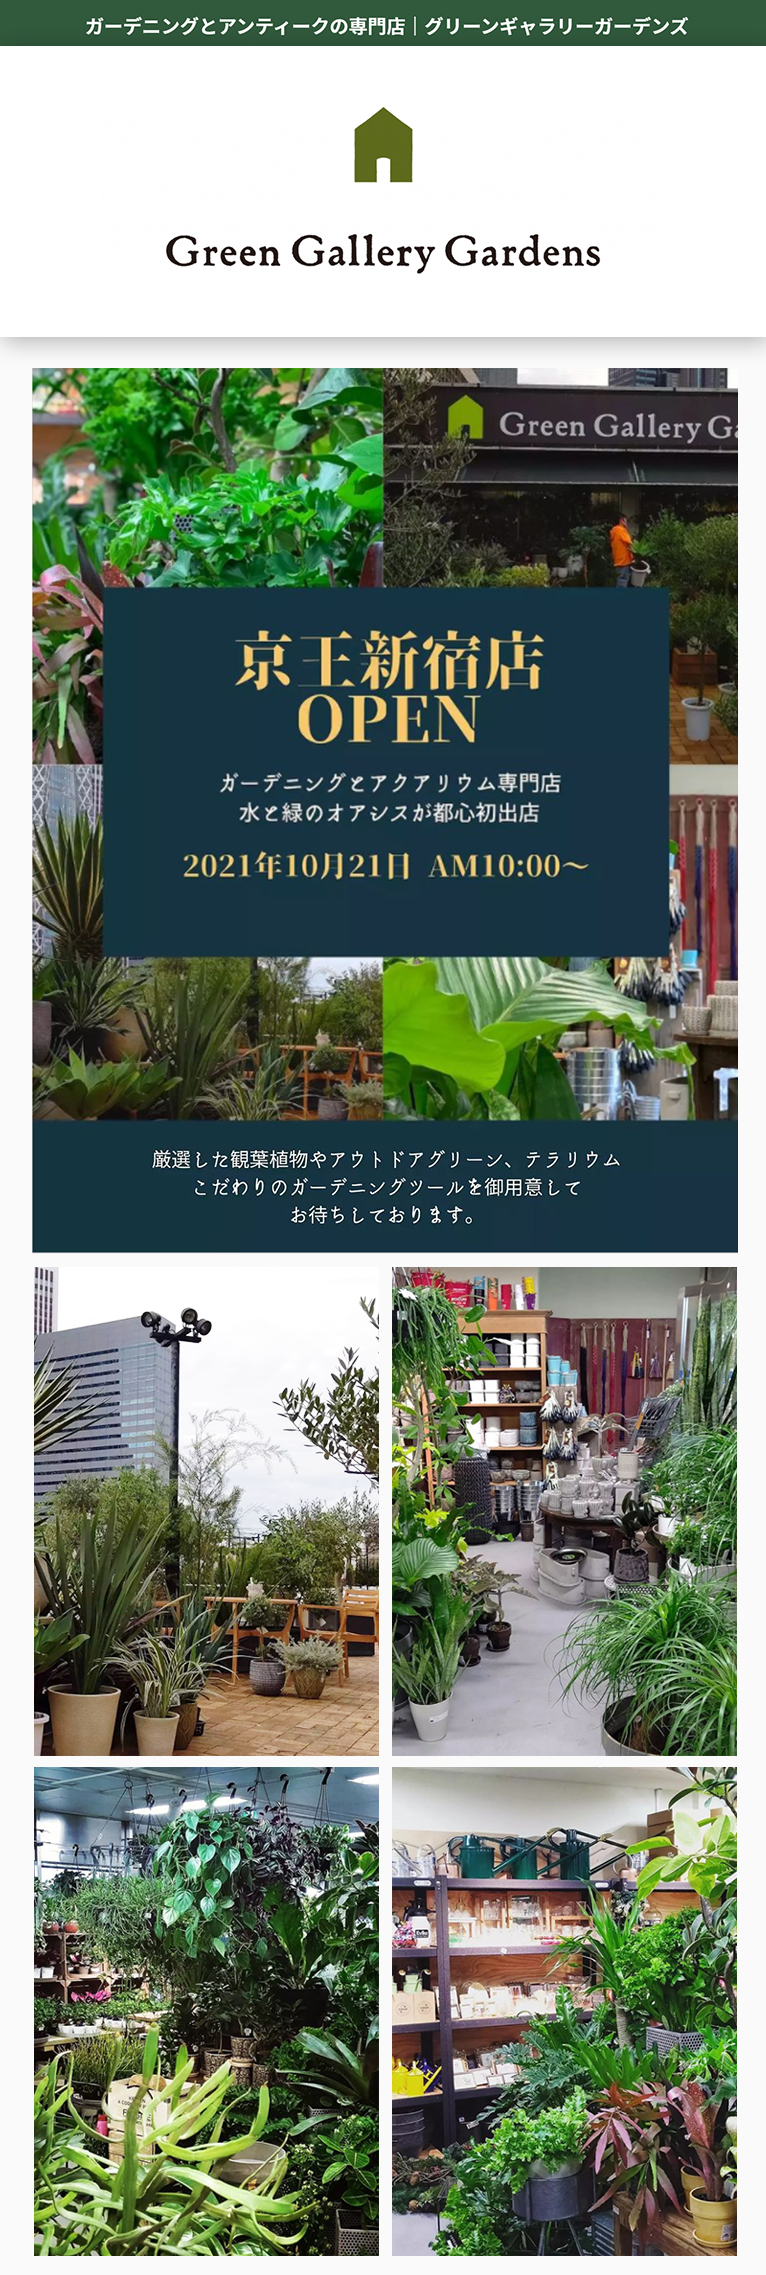 【2021年10月21～31日オープニング特典有】京王百貨店新宿屋上にグリーンギャラリーガーデンズがオープン！